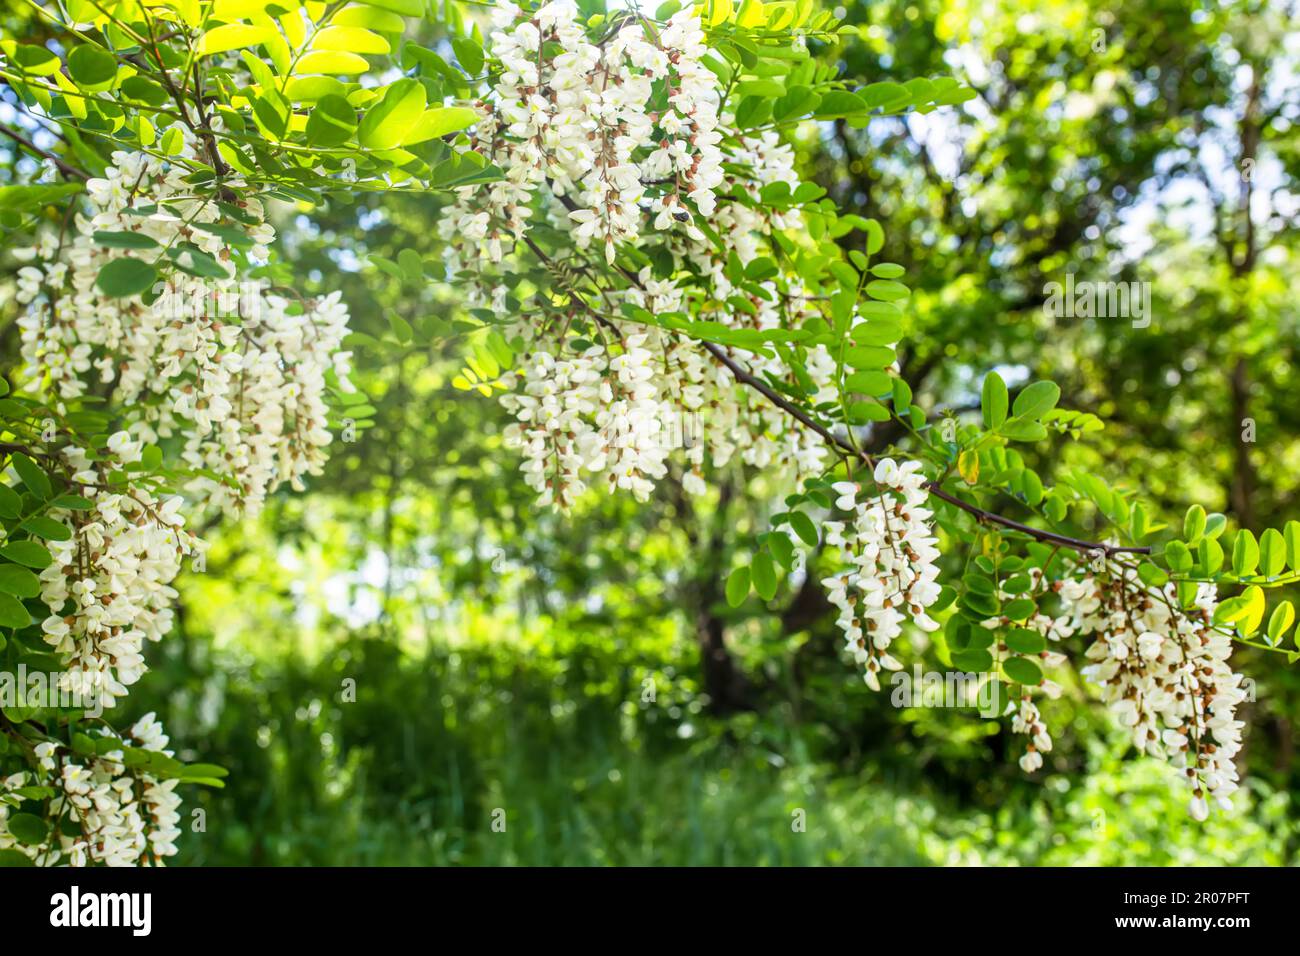 Weiße Akazien an einem sonnigen Tag. Duftende, köstliche Blumen auf dem Baum. Frische Blütenblätter von Pseudoakazienblüten. Zierhonigpflanze mit Pollen auf der Sonne Stockfoto